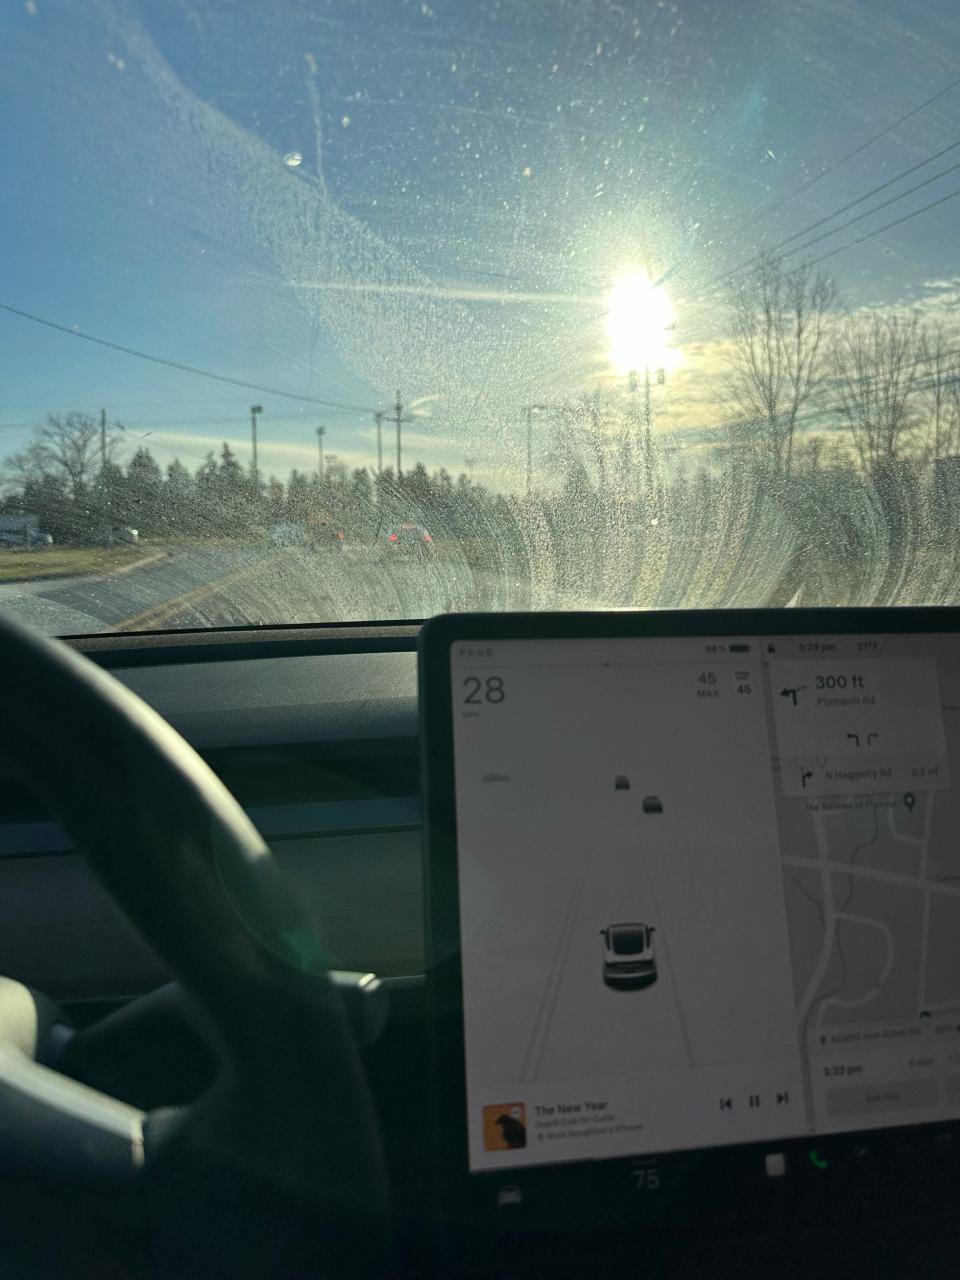 Dirty windshield in Tesla Model 3